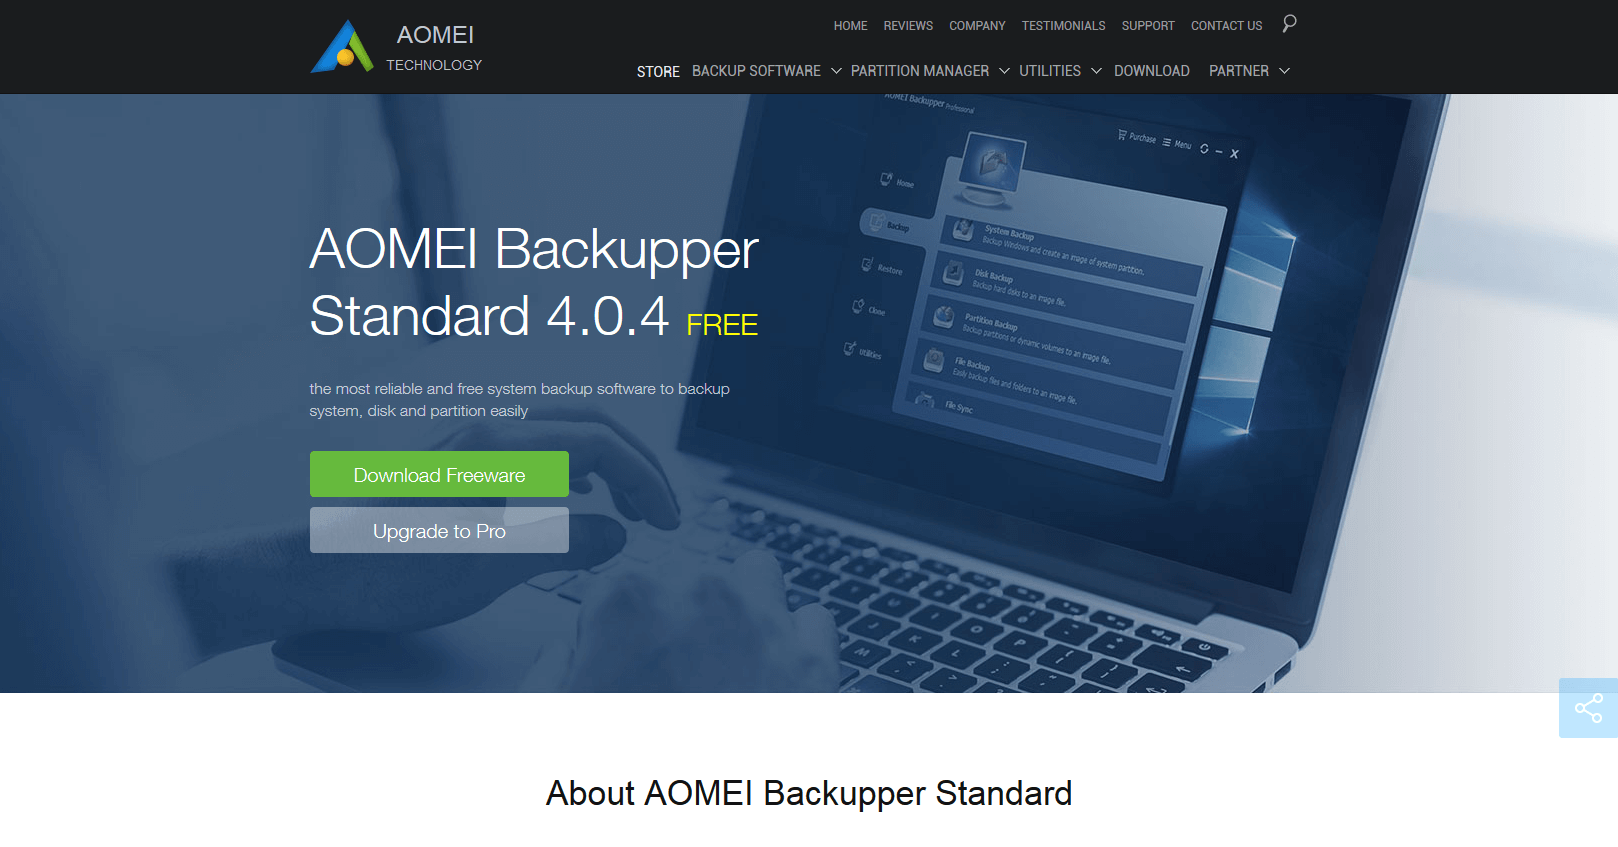 Sito web del prodotto: AOMEI Backupper Standard 4.0.4